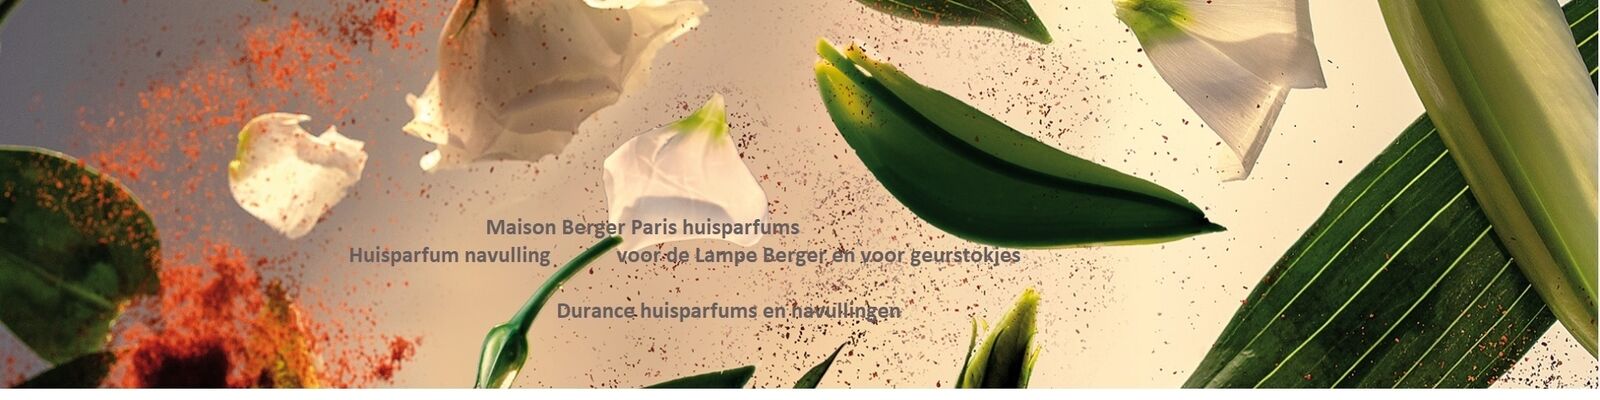 Lampe Berger - Durance huisparfum slide.jpg